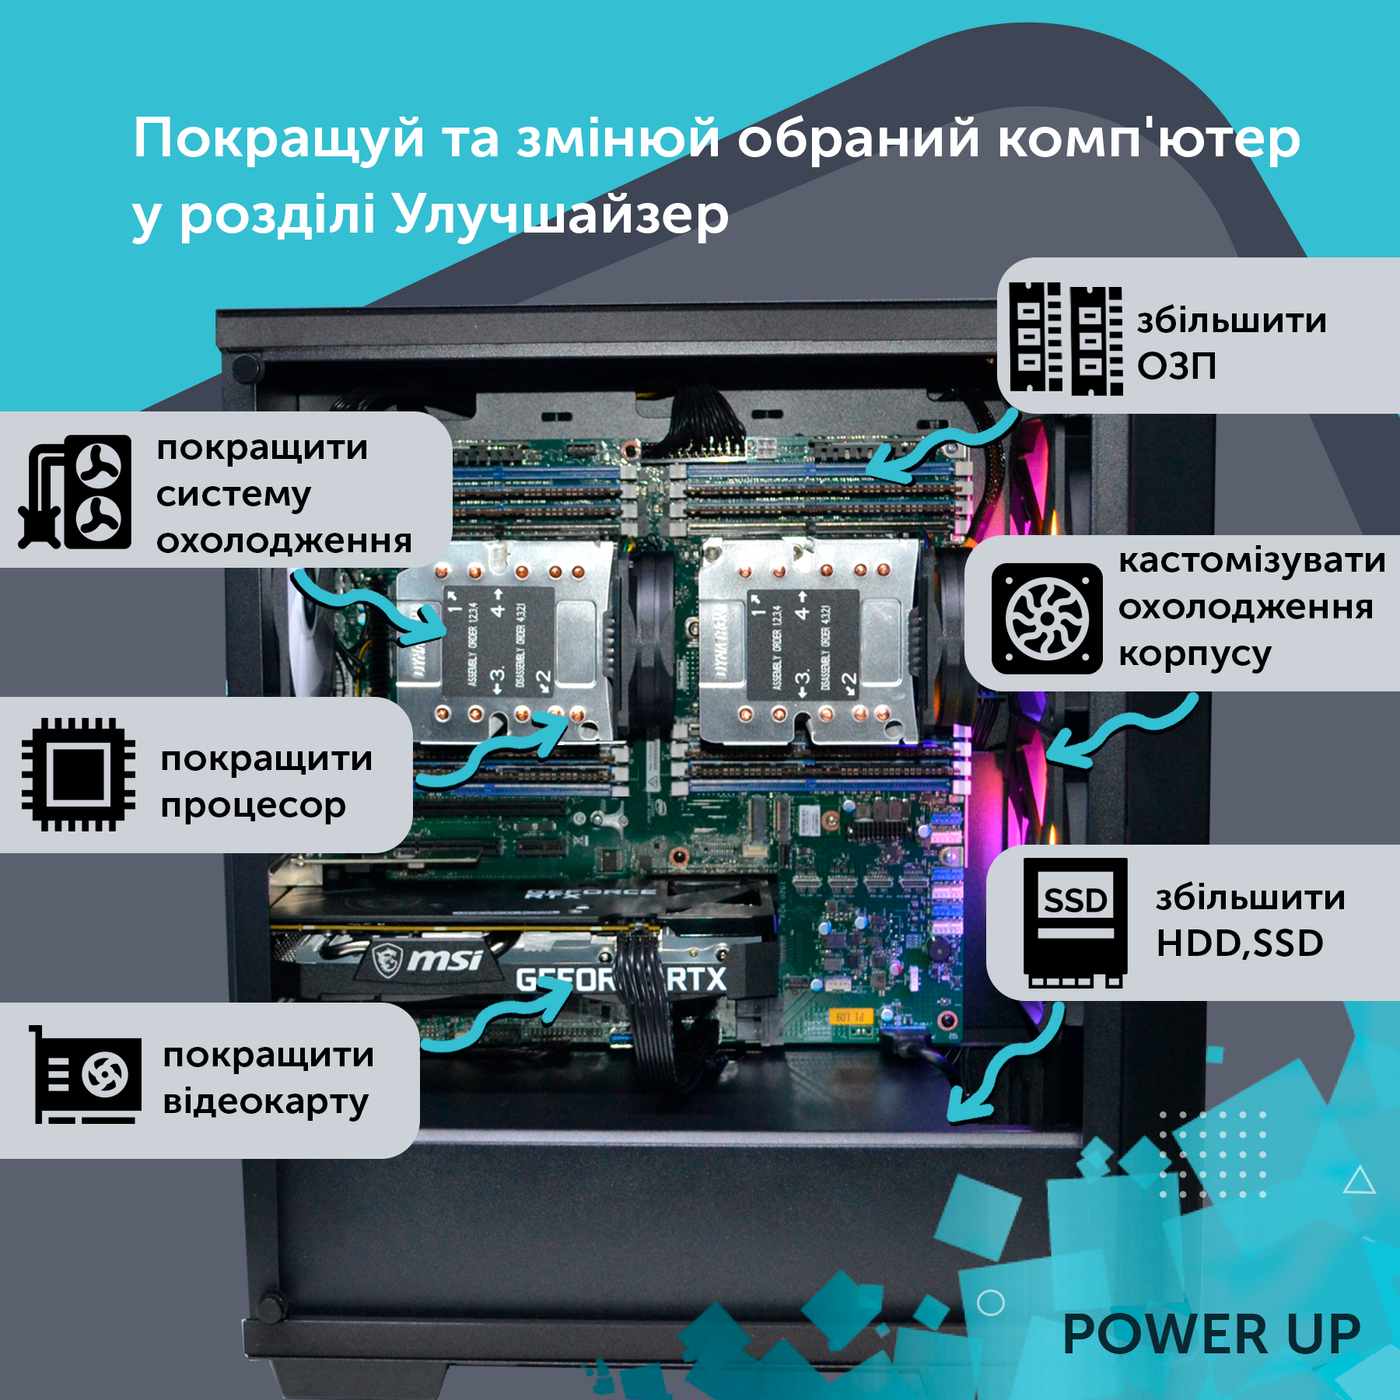 Робоча станція PowerUp Desktop #321 Core i7 14700K/64 GB/SSD 1TB/GeForce RTX 4070Ti 12GB